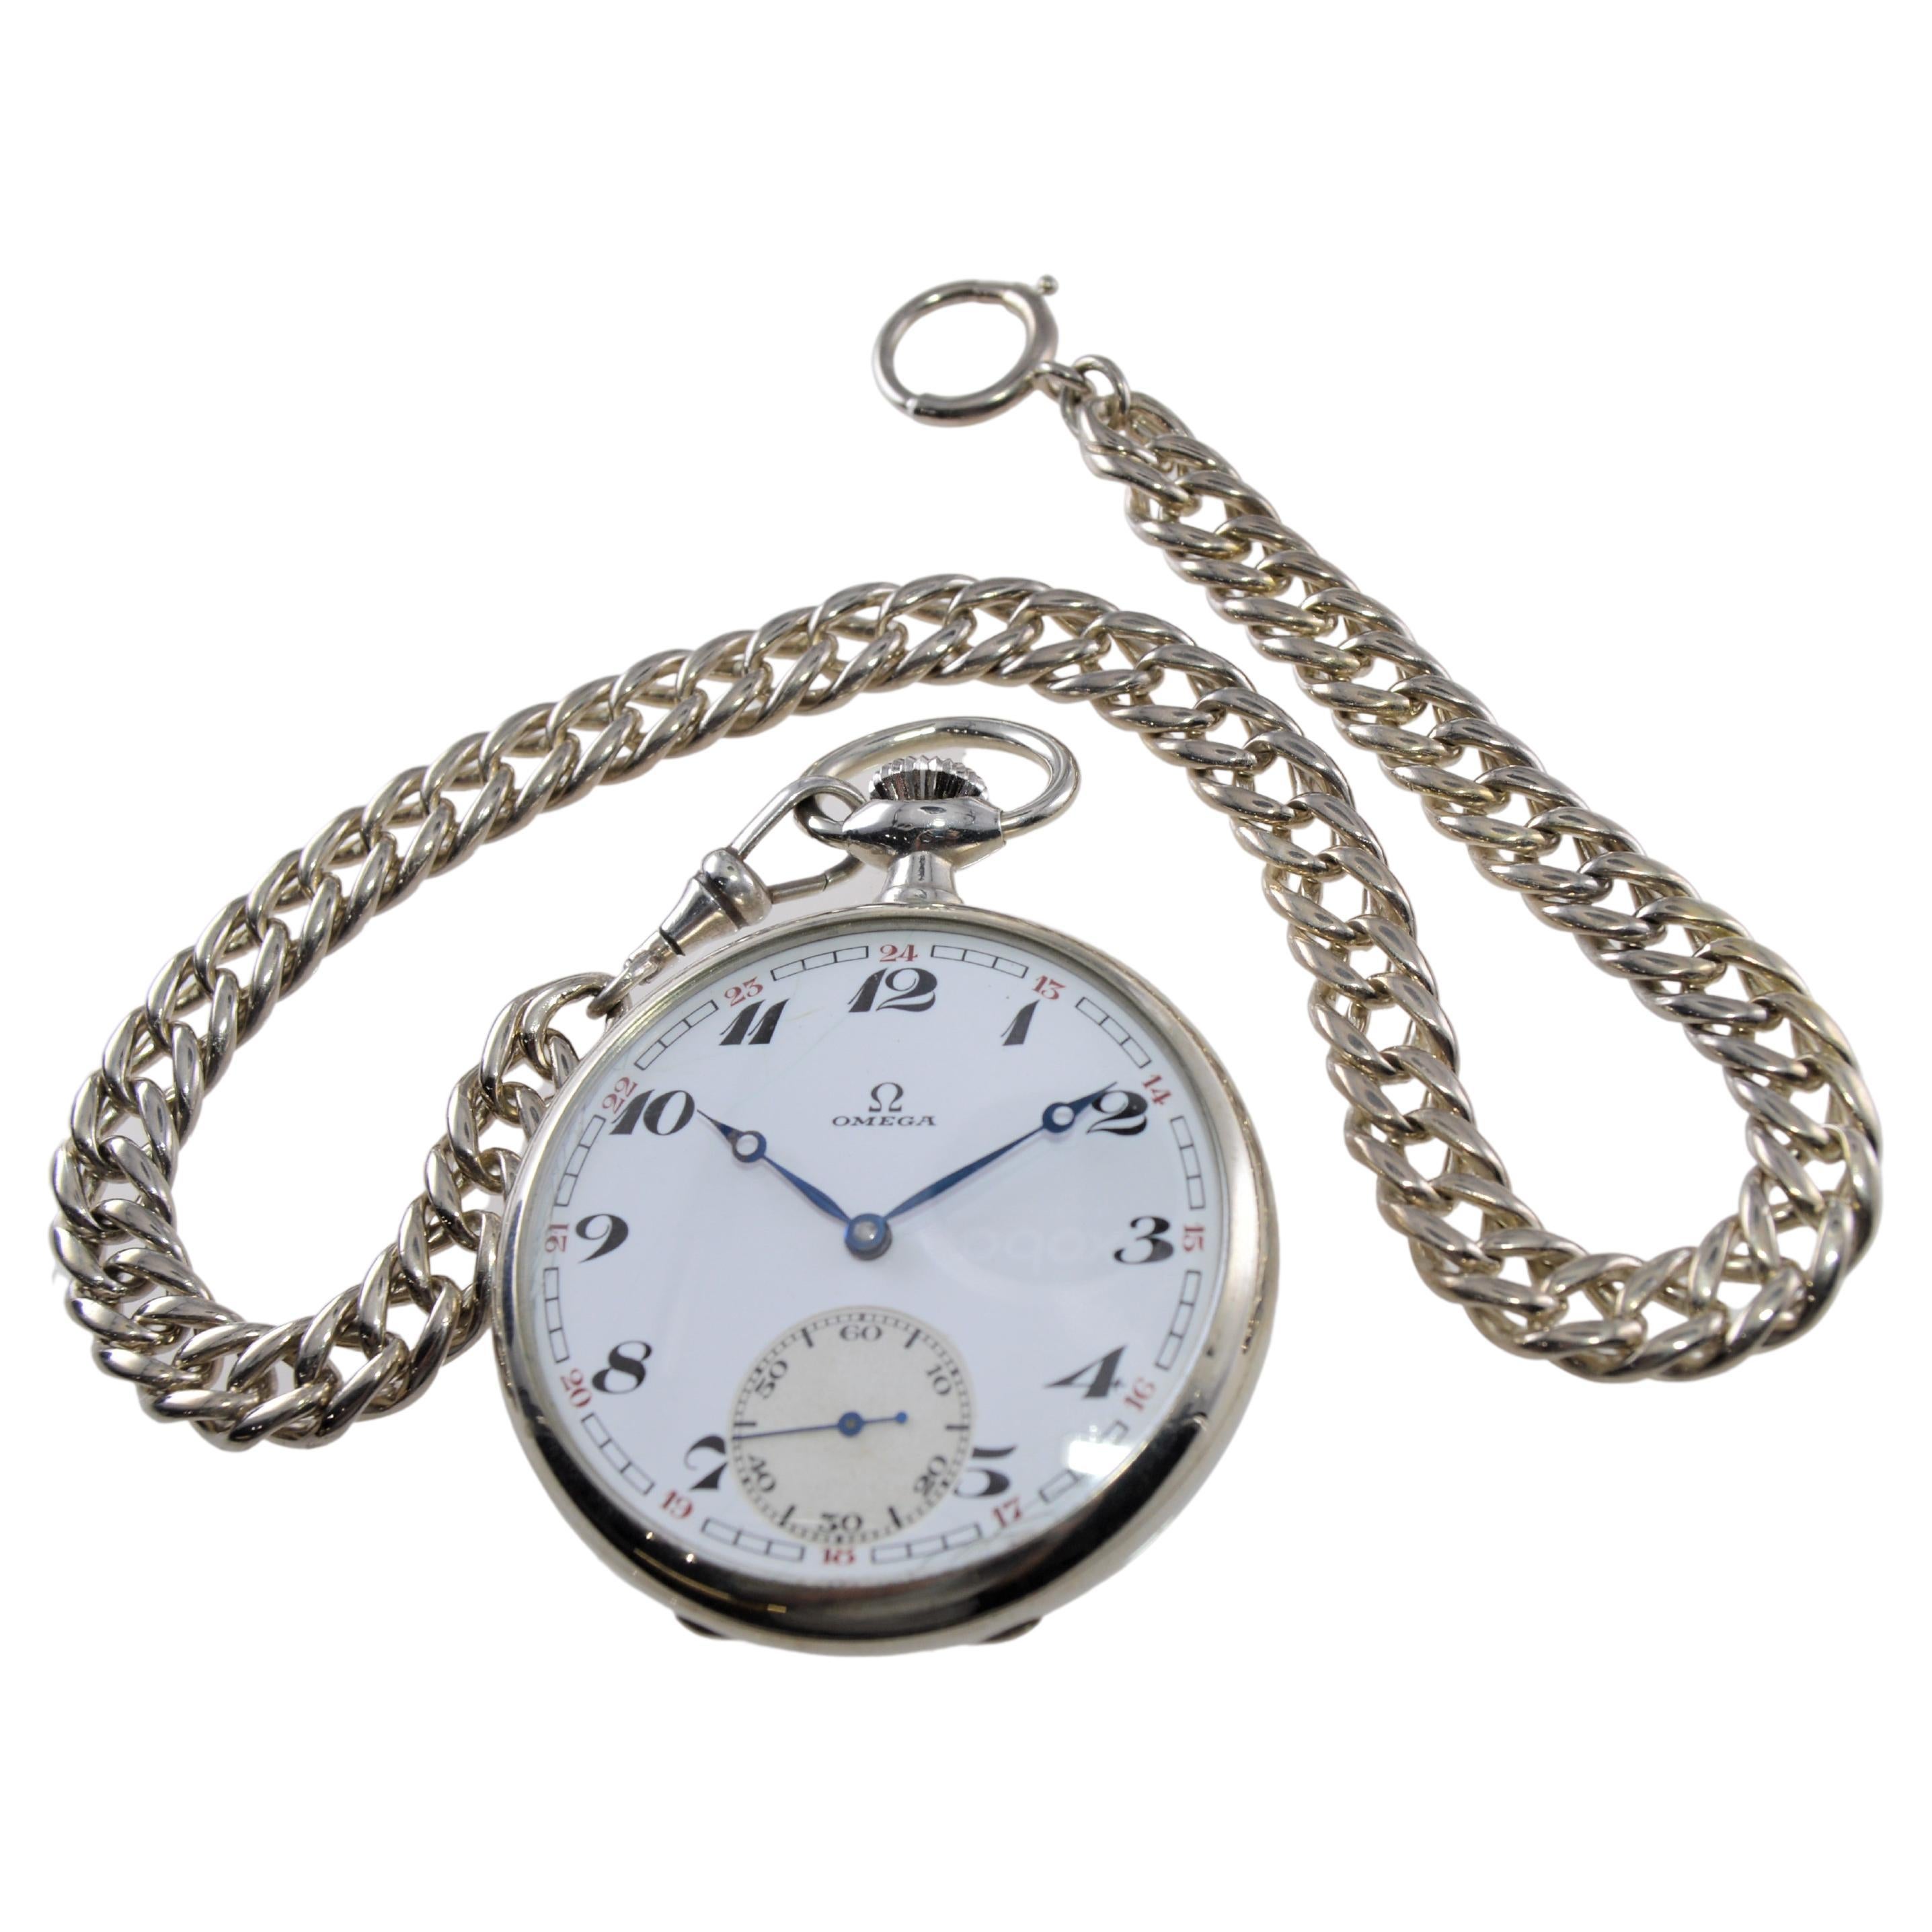 USINE / MAISON : Omega Watch Company
STYLE / RÉFÉRENCE : Montre de poche ouverte
MÉTAL / MATÉRIAU : Nickel argenté
CIRCA / ANNÉE : 1928 / 29
DIMENSIONS / TAILLE :  Diamètre 49 mm
MOUVEMENT / CALIBRE : Remontage manuel / 15 rubis 
CADRAN / AIGUILLES